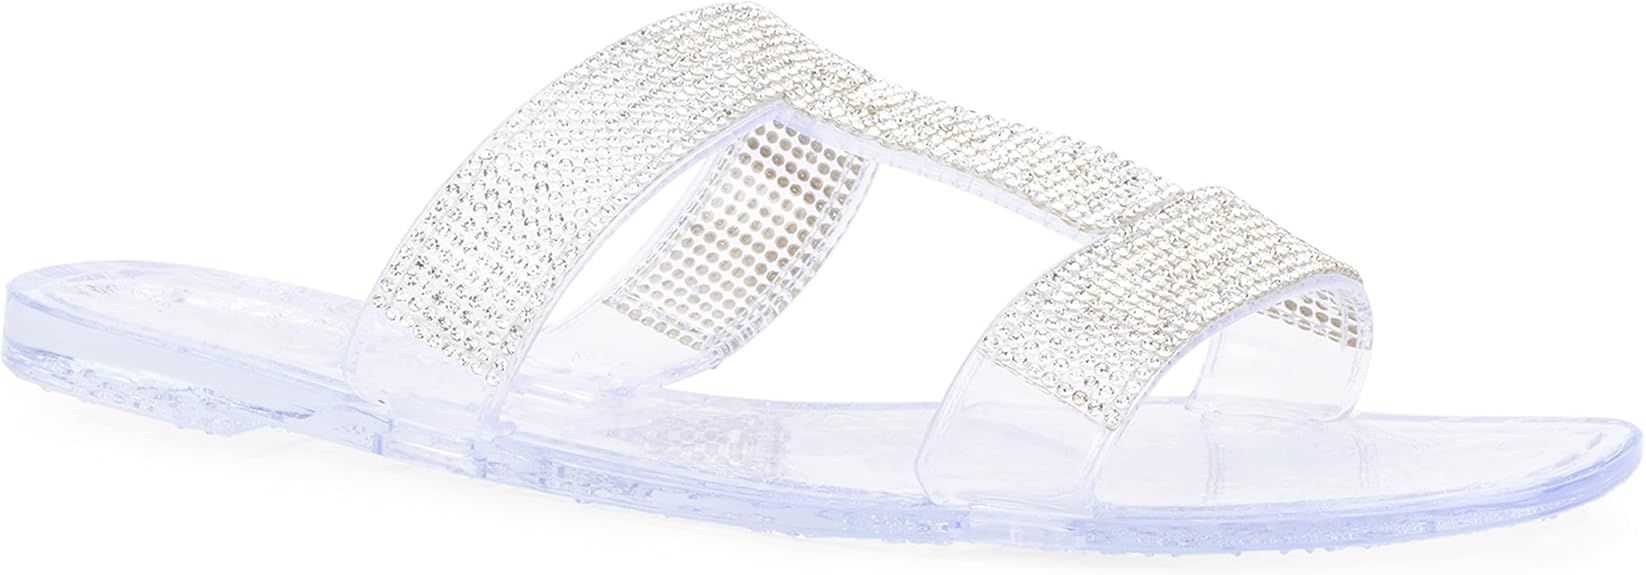 Olivia Miller Women’s Fashion Ladies Shoes, PVC Jelly w Embellished Glitter Studded Rhinestones... | Amazon (US)